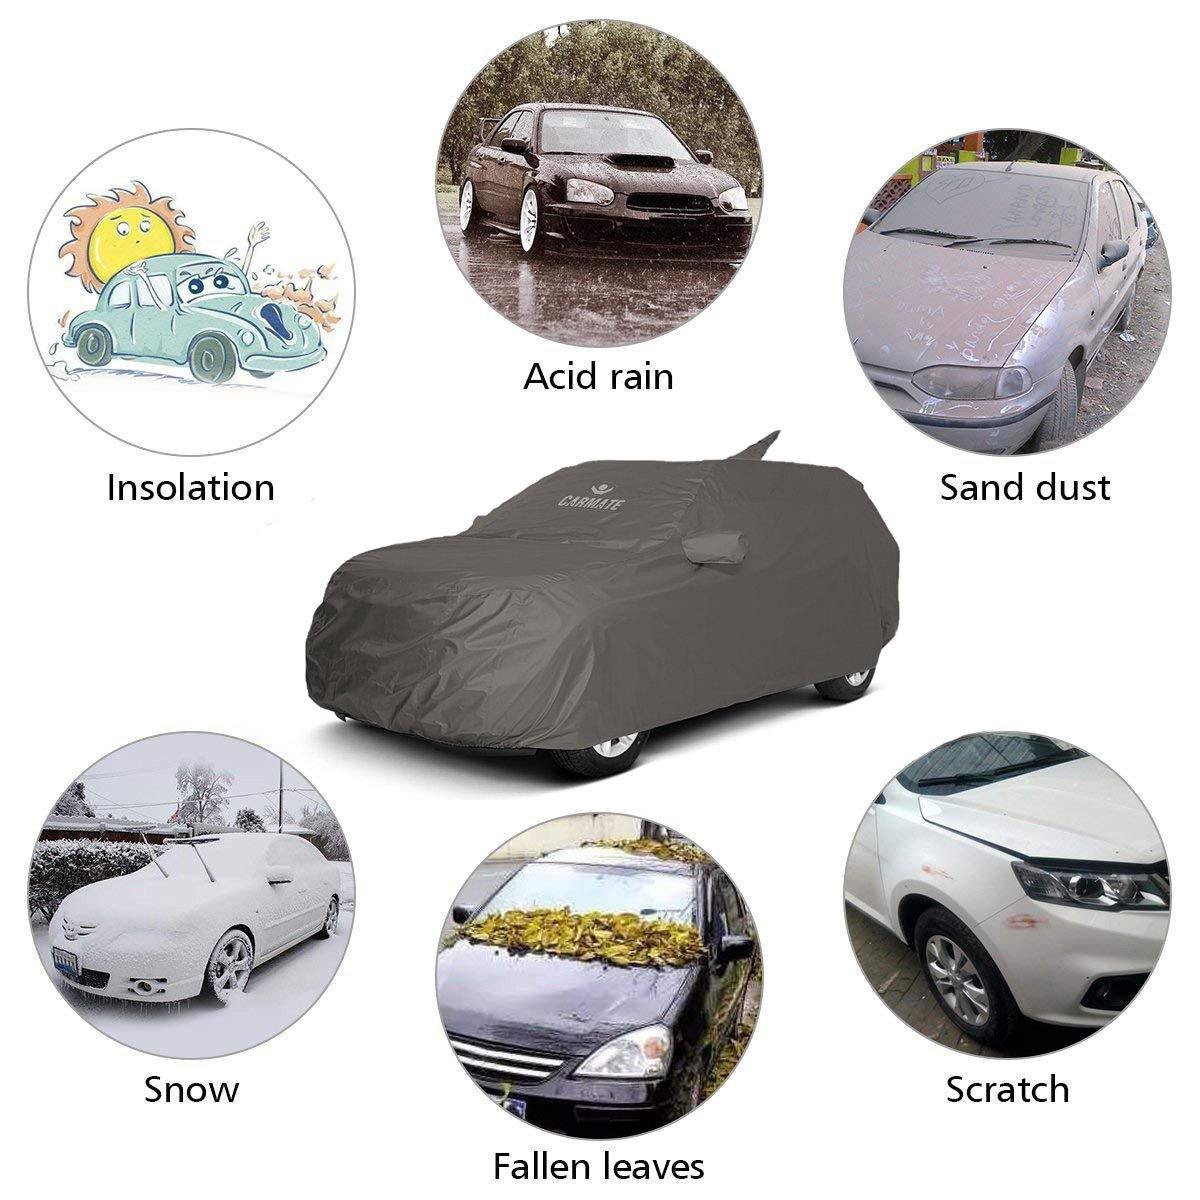 Carmate Car Body Cover 100% Waterproof Pride (Grey) for Hyundai - Verna 2017 - CARMATE®